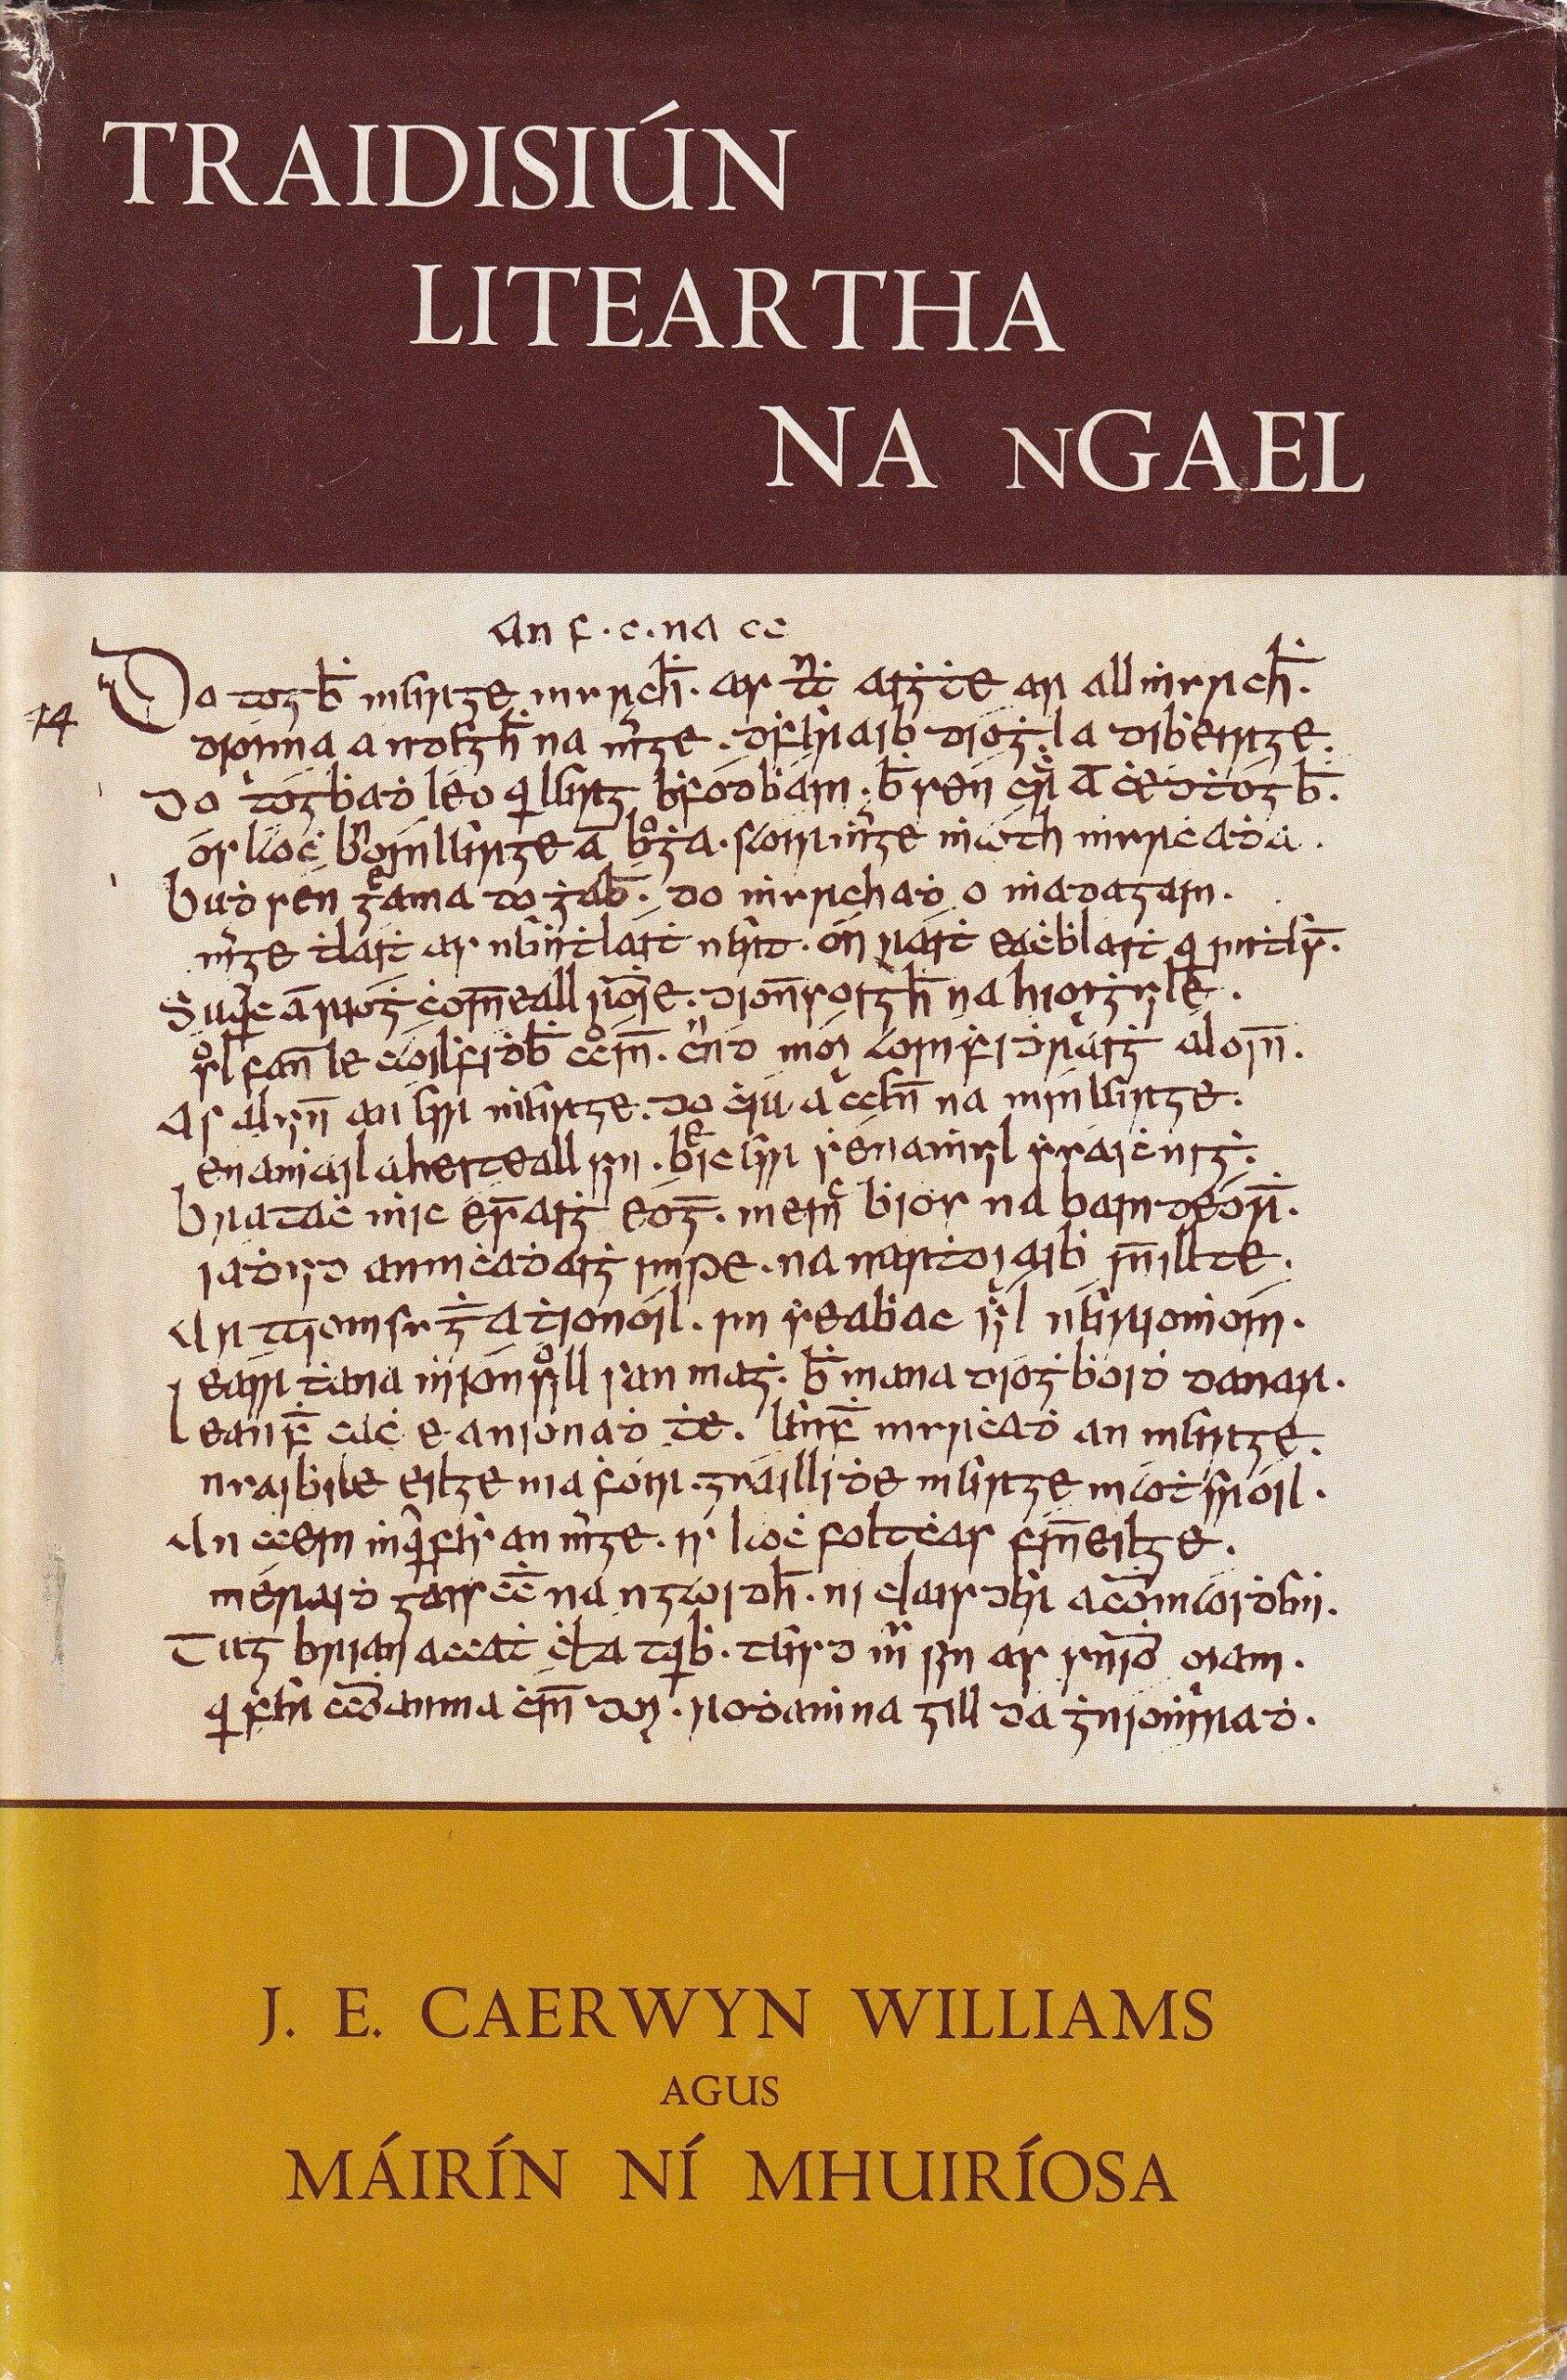 Traidisiún Liteartha na nGael by J.E. Caerwyn Williams and Máirín Ní Mhuiríosa